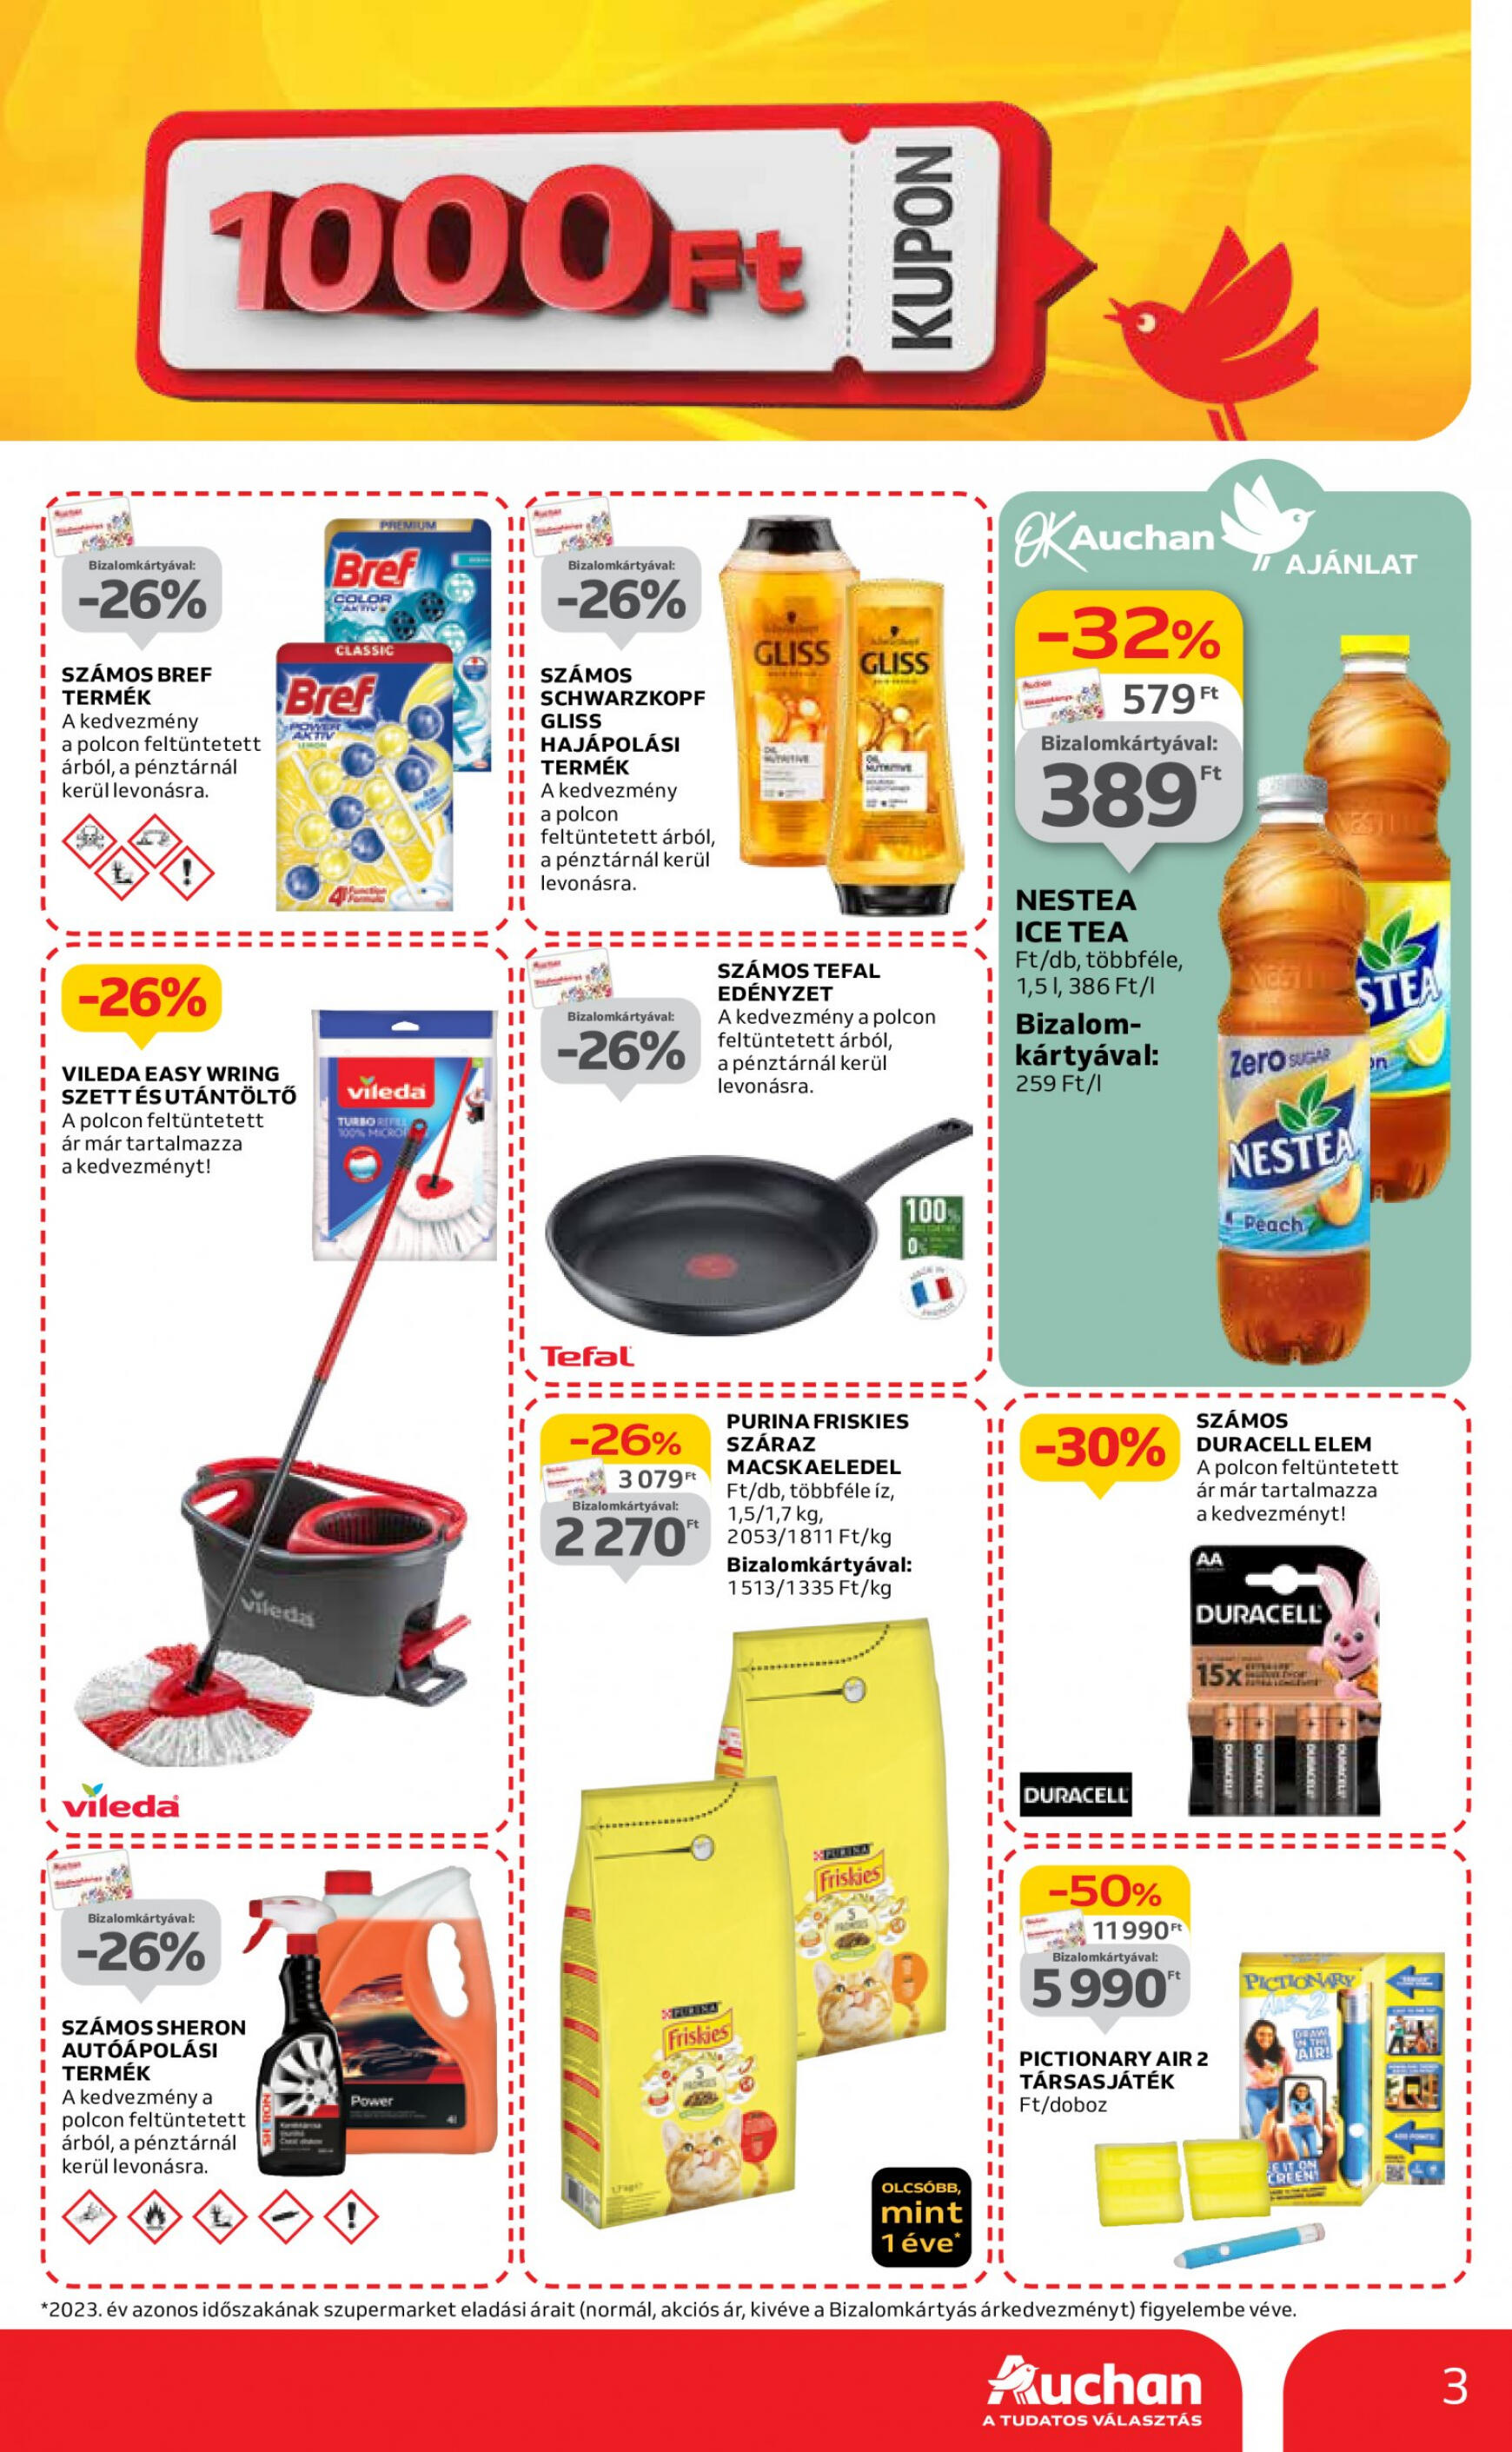 auchan - Aktuális újság Auchan szupermarket 05.02. - 05.08. - page: 3